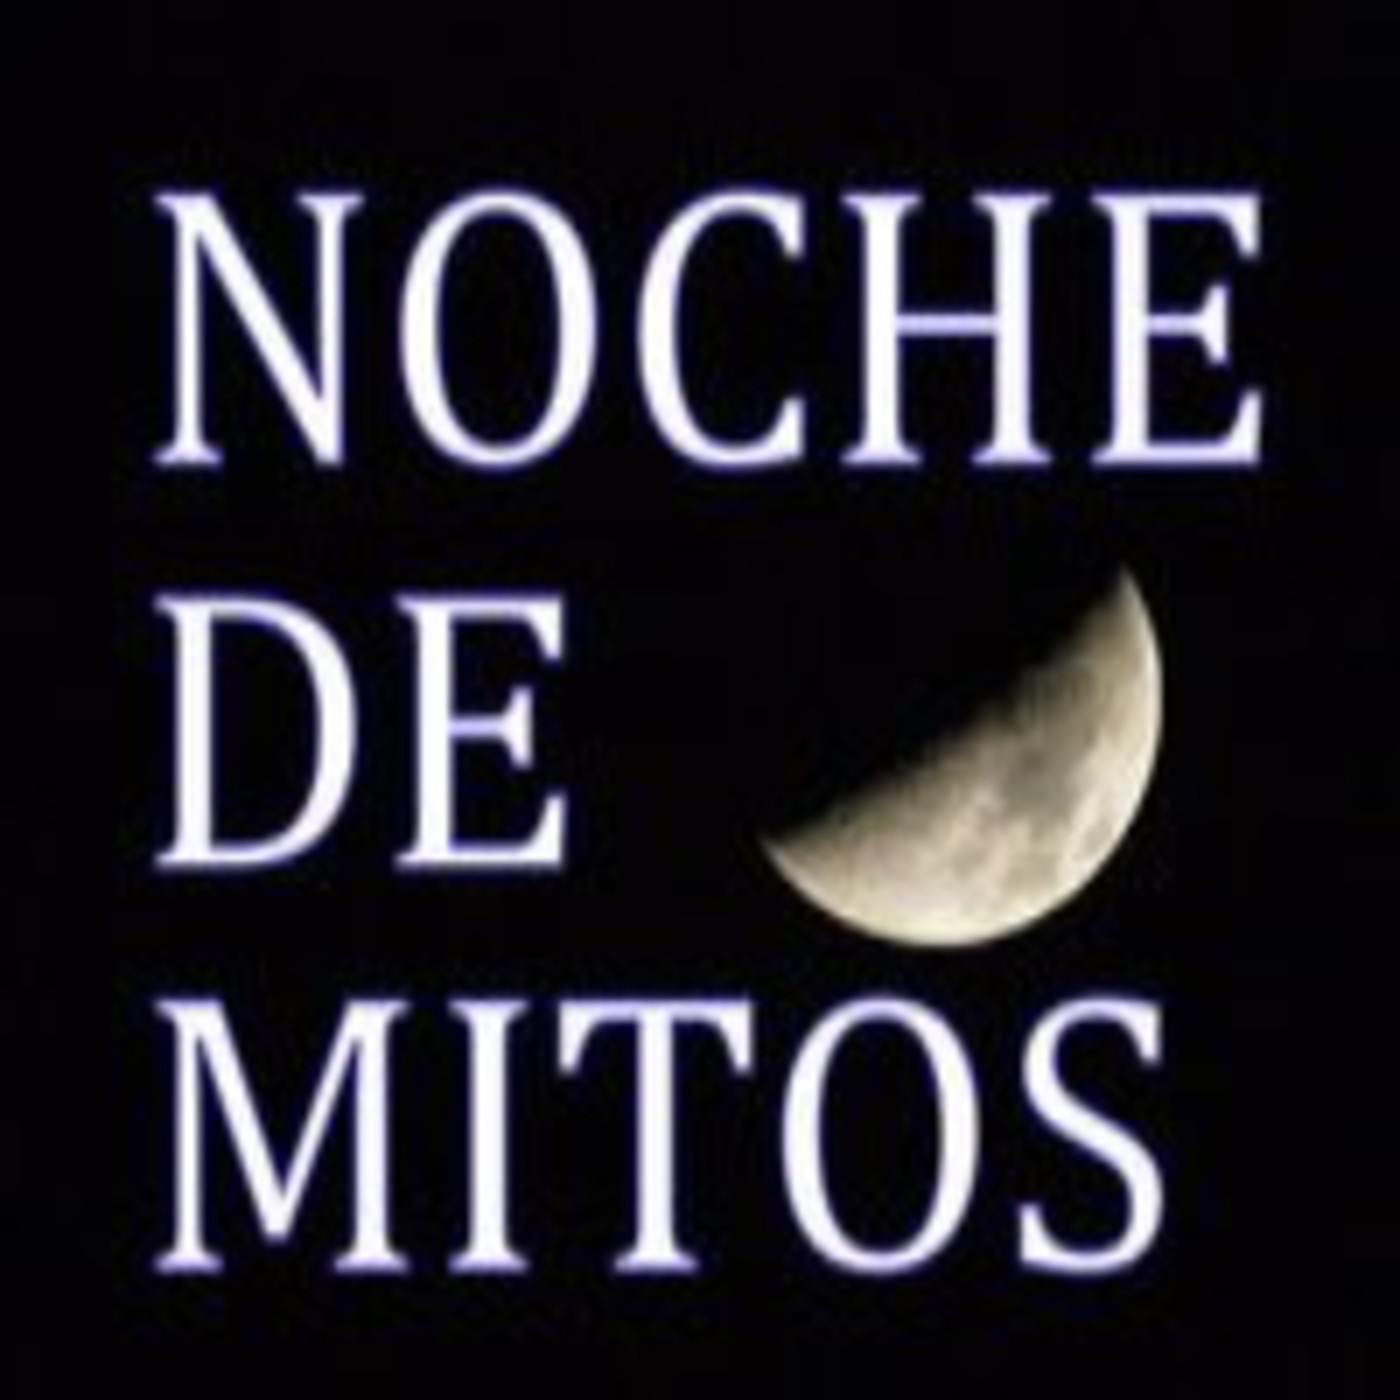 Noche de Mitos (14) Homenaje y entrevista a Juan Jose Plans hablamos de terror,miedo,vampiros y lobos